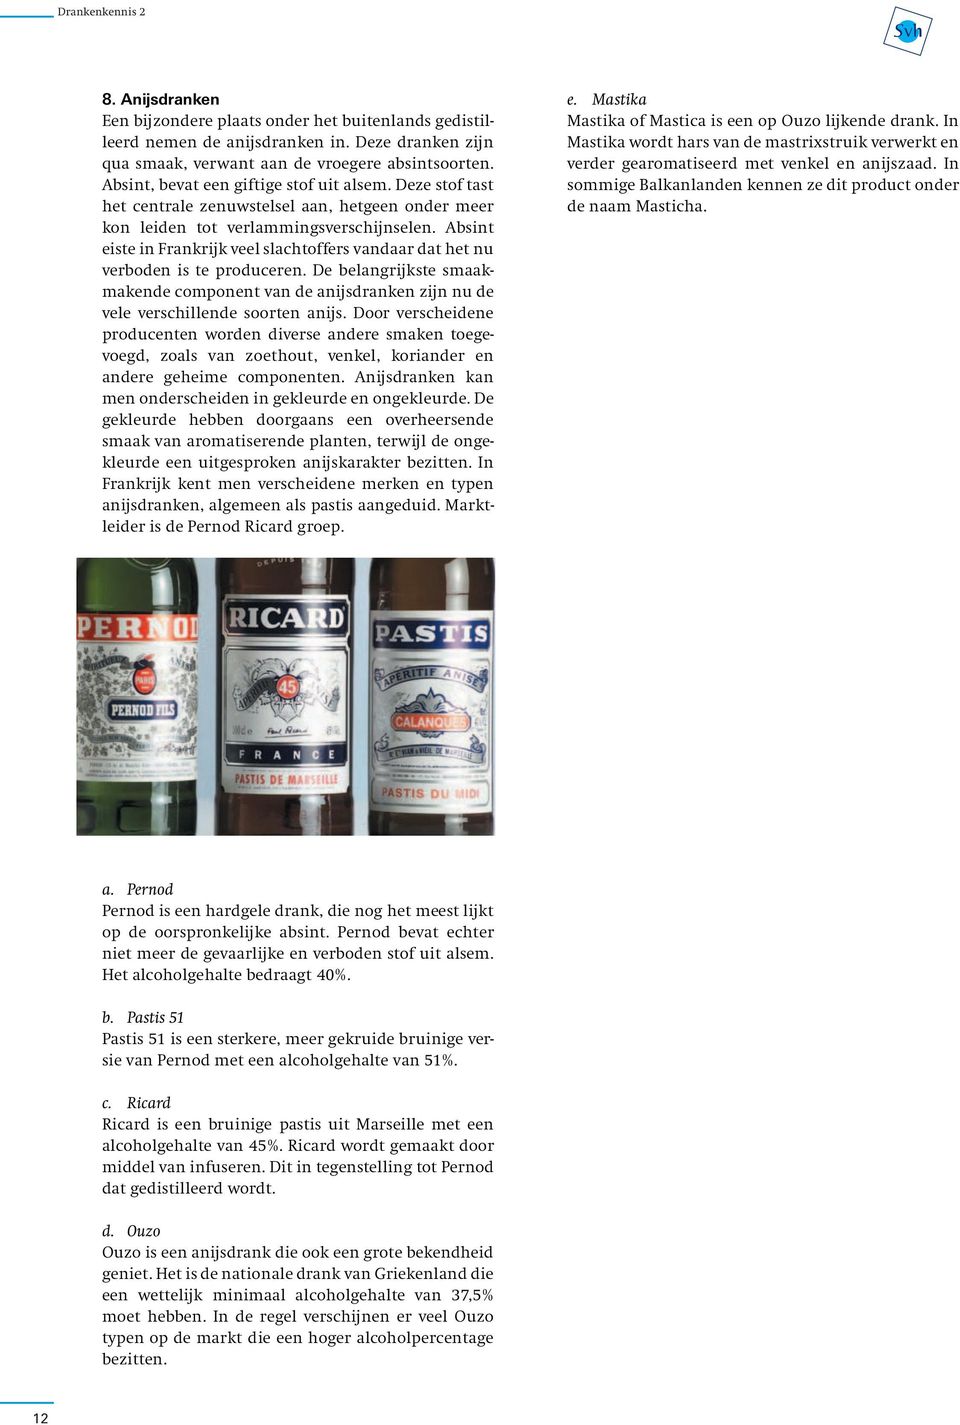 Absint eiste in Frankrijk veel slachtoffers vandaar dat het nu verboden is te produceren. De belangrijkste smaakmakende component van de anijsdranken zijn nu de vele verschillende soorten anijs.